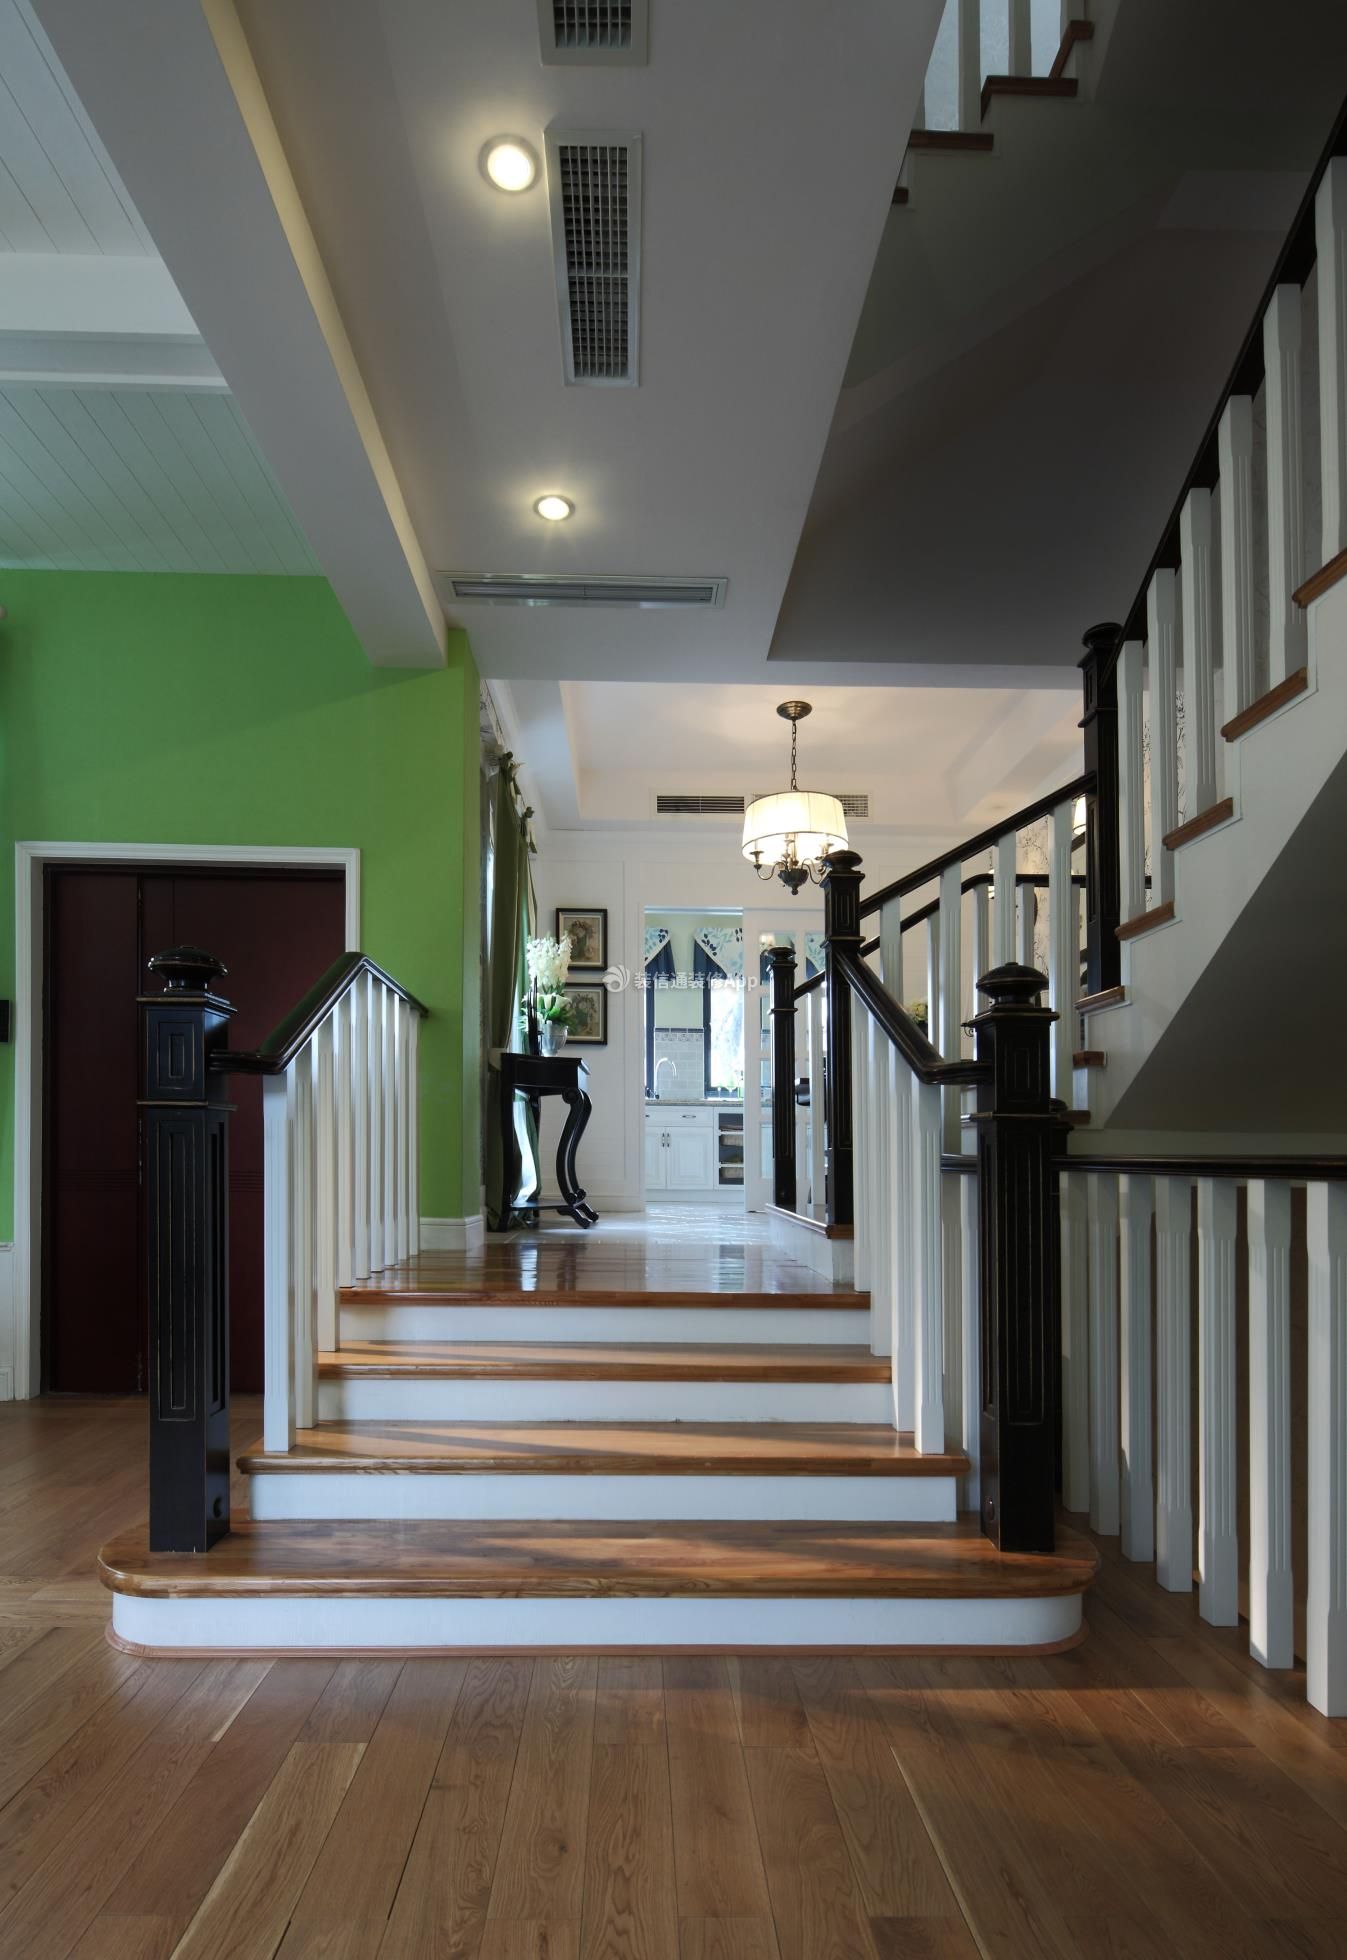 2017美式风格复式家居楼梯间过道斜顶阁楼吊灯装修效果图 – 设计本装修效果图